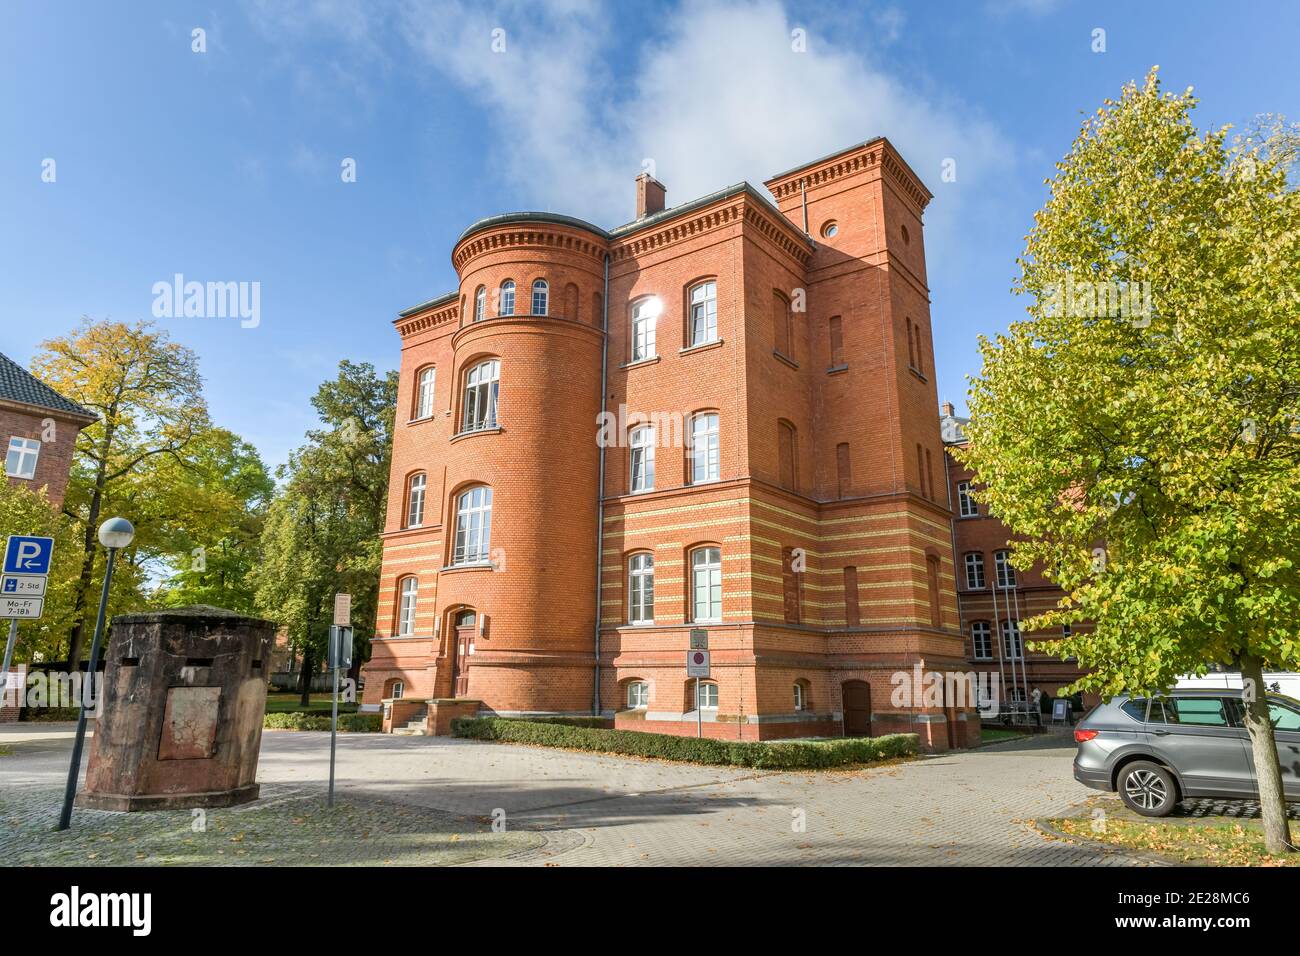 Rathaus, Neuruppin, Landkreis Ostprignitz-Ruppin, Brandenburg, Deutschland Stock Photo